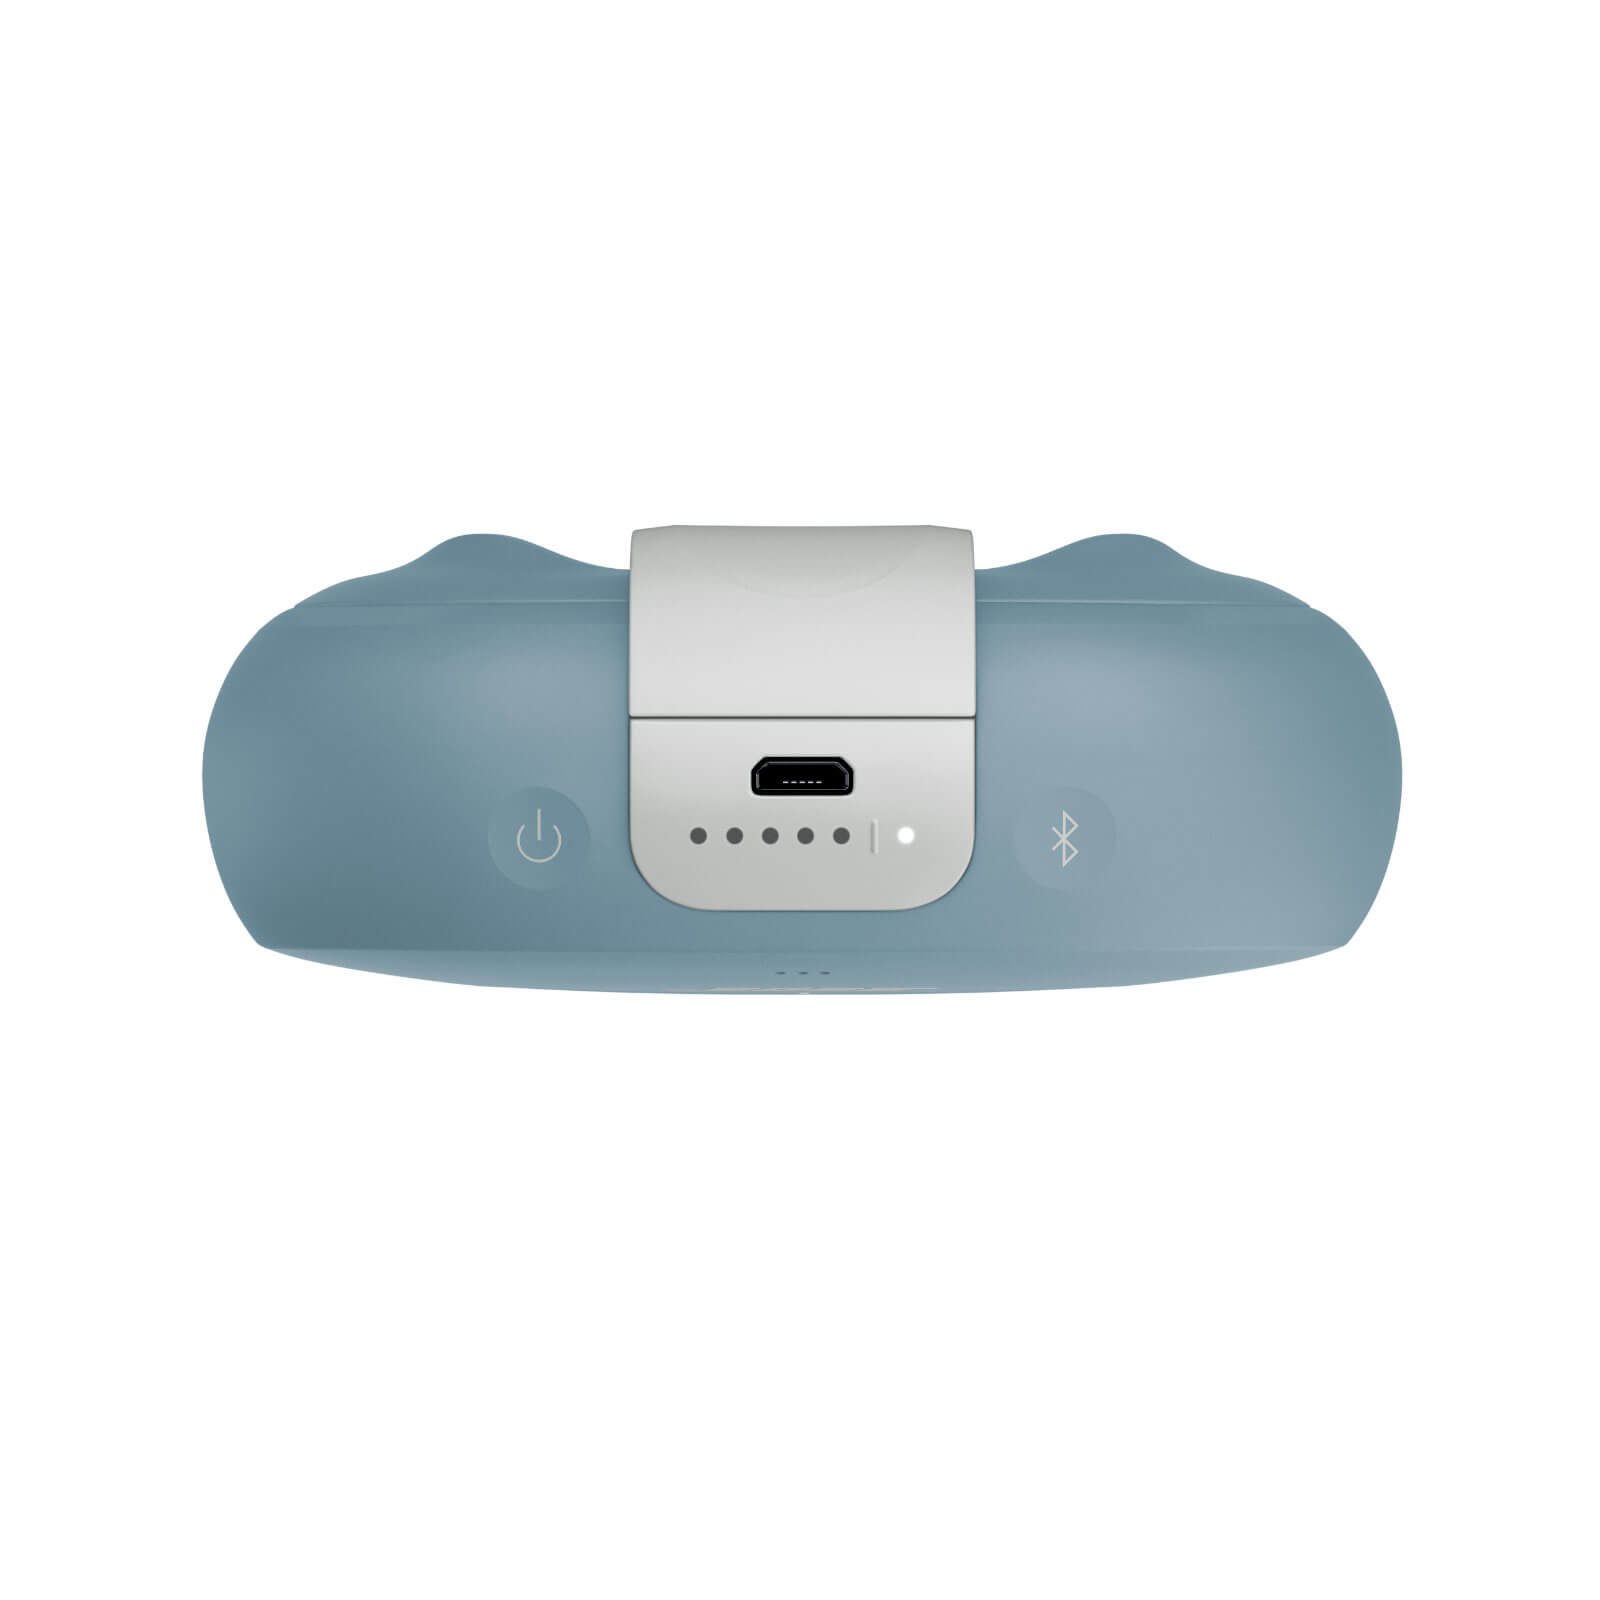 Bose SoundLink Micro Bluetooth en nuevos colores. Variedad para el mejor audio portátil